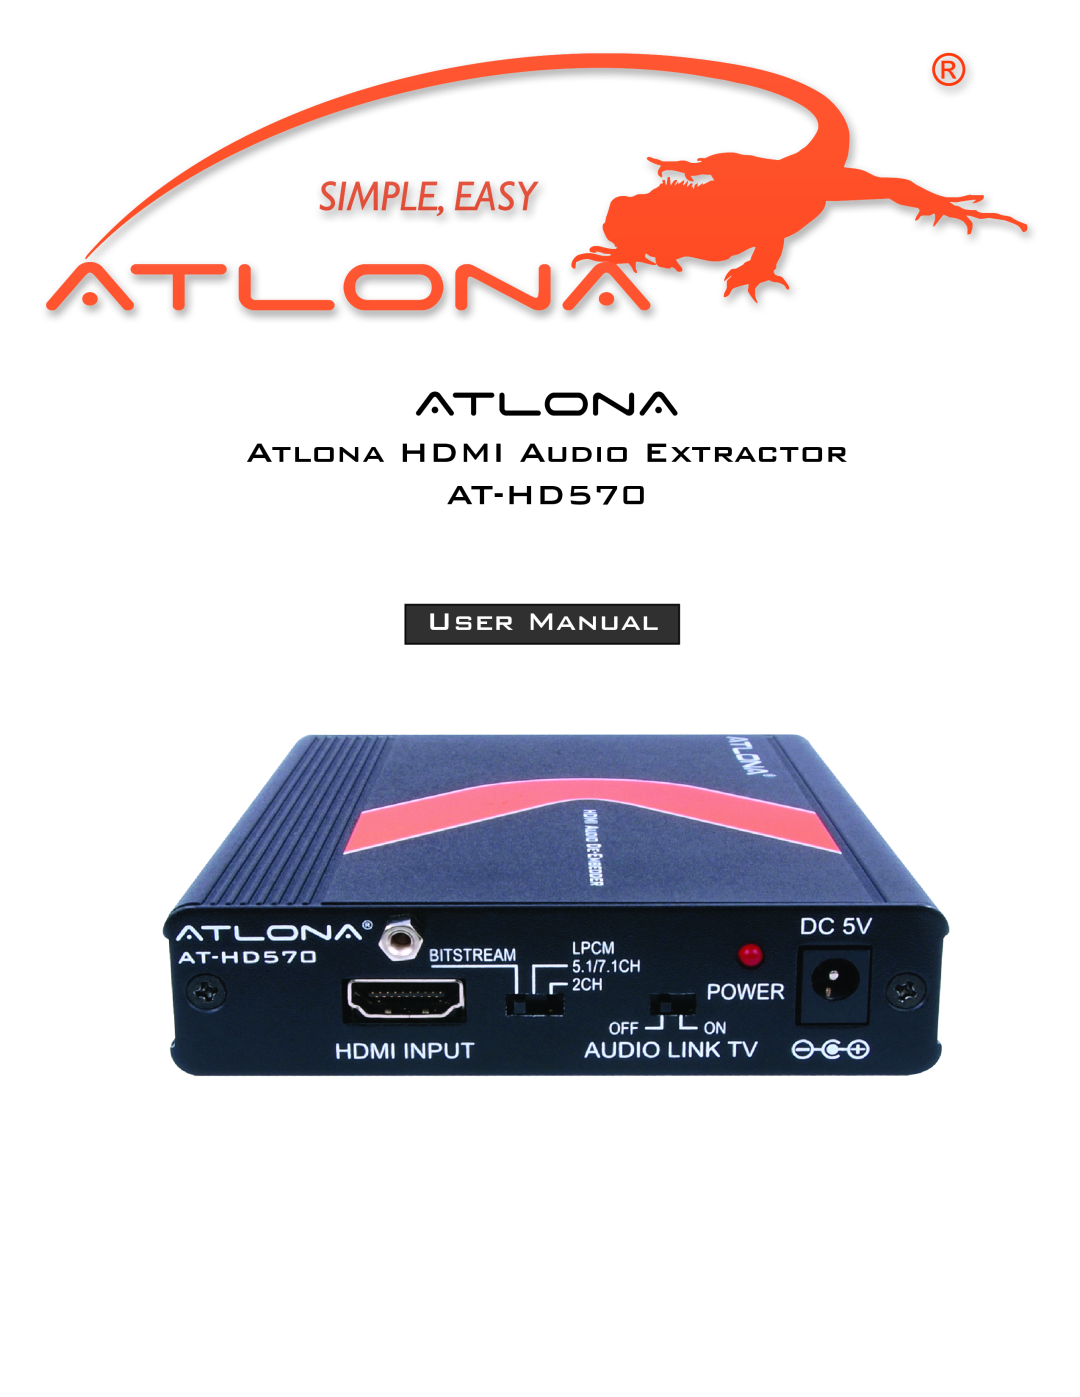 Atlona AT-HD570 user manual Atlona Hdmi Audio Extractor, User Manual 